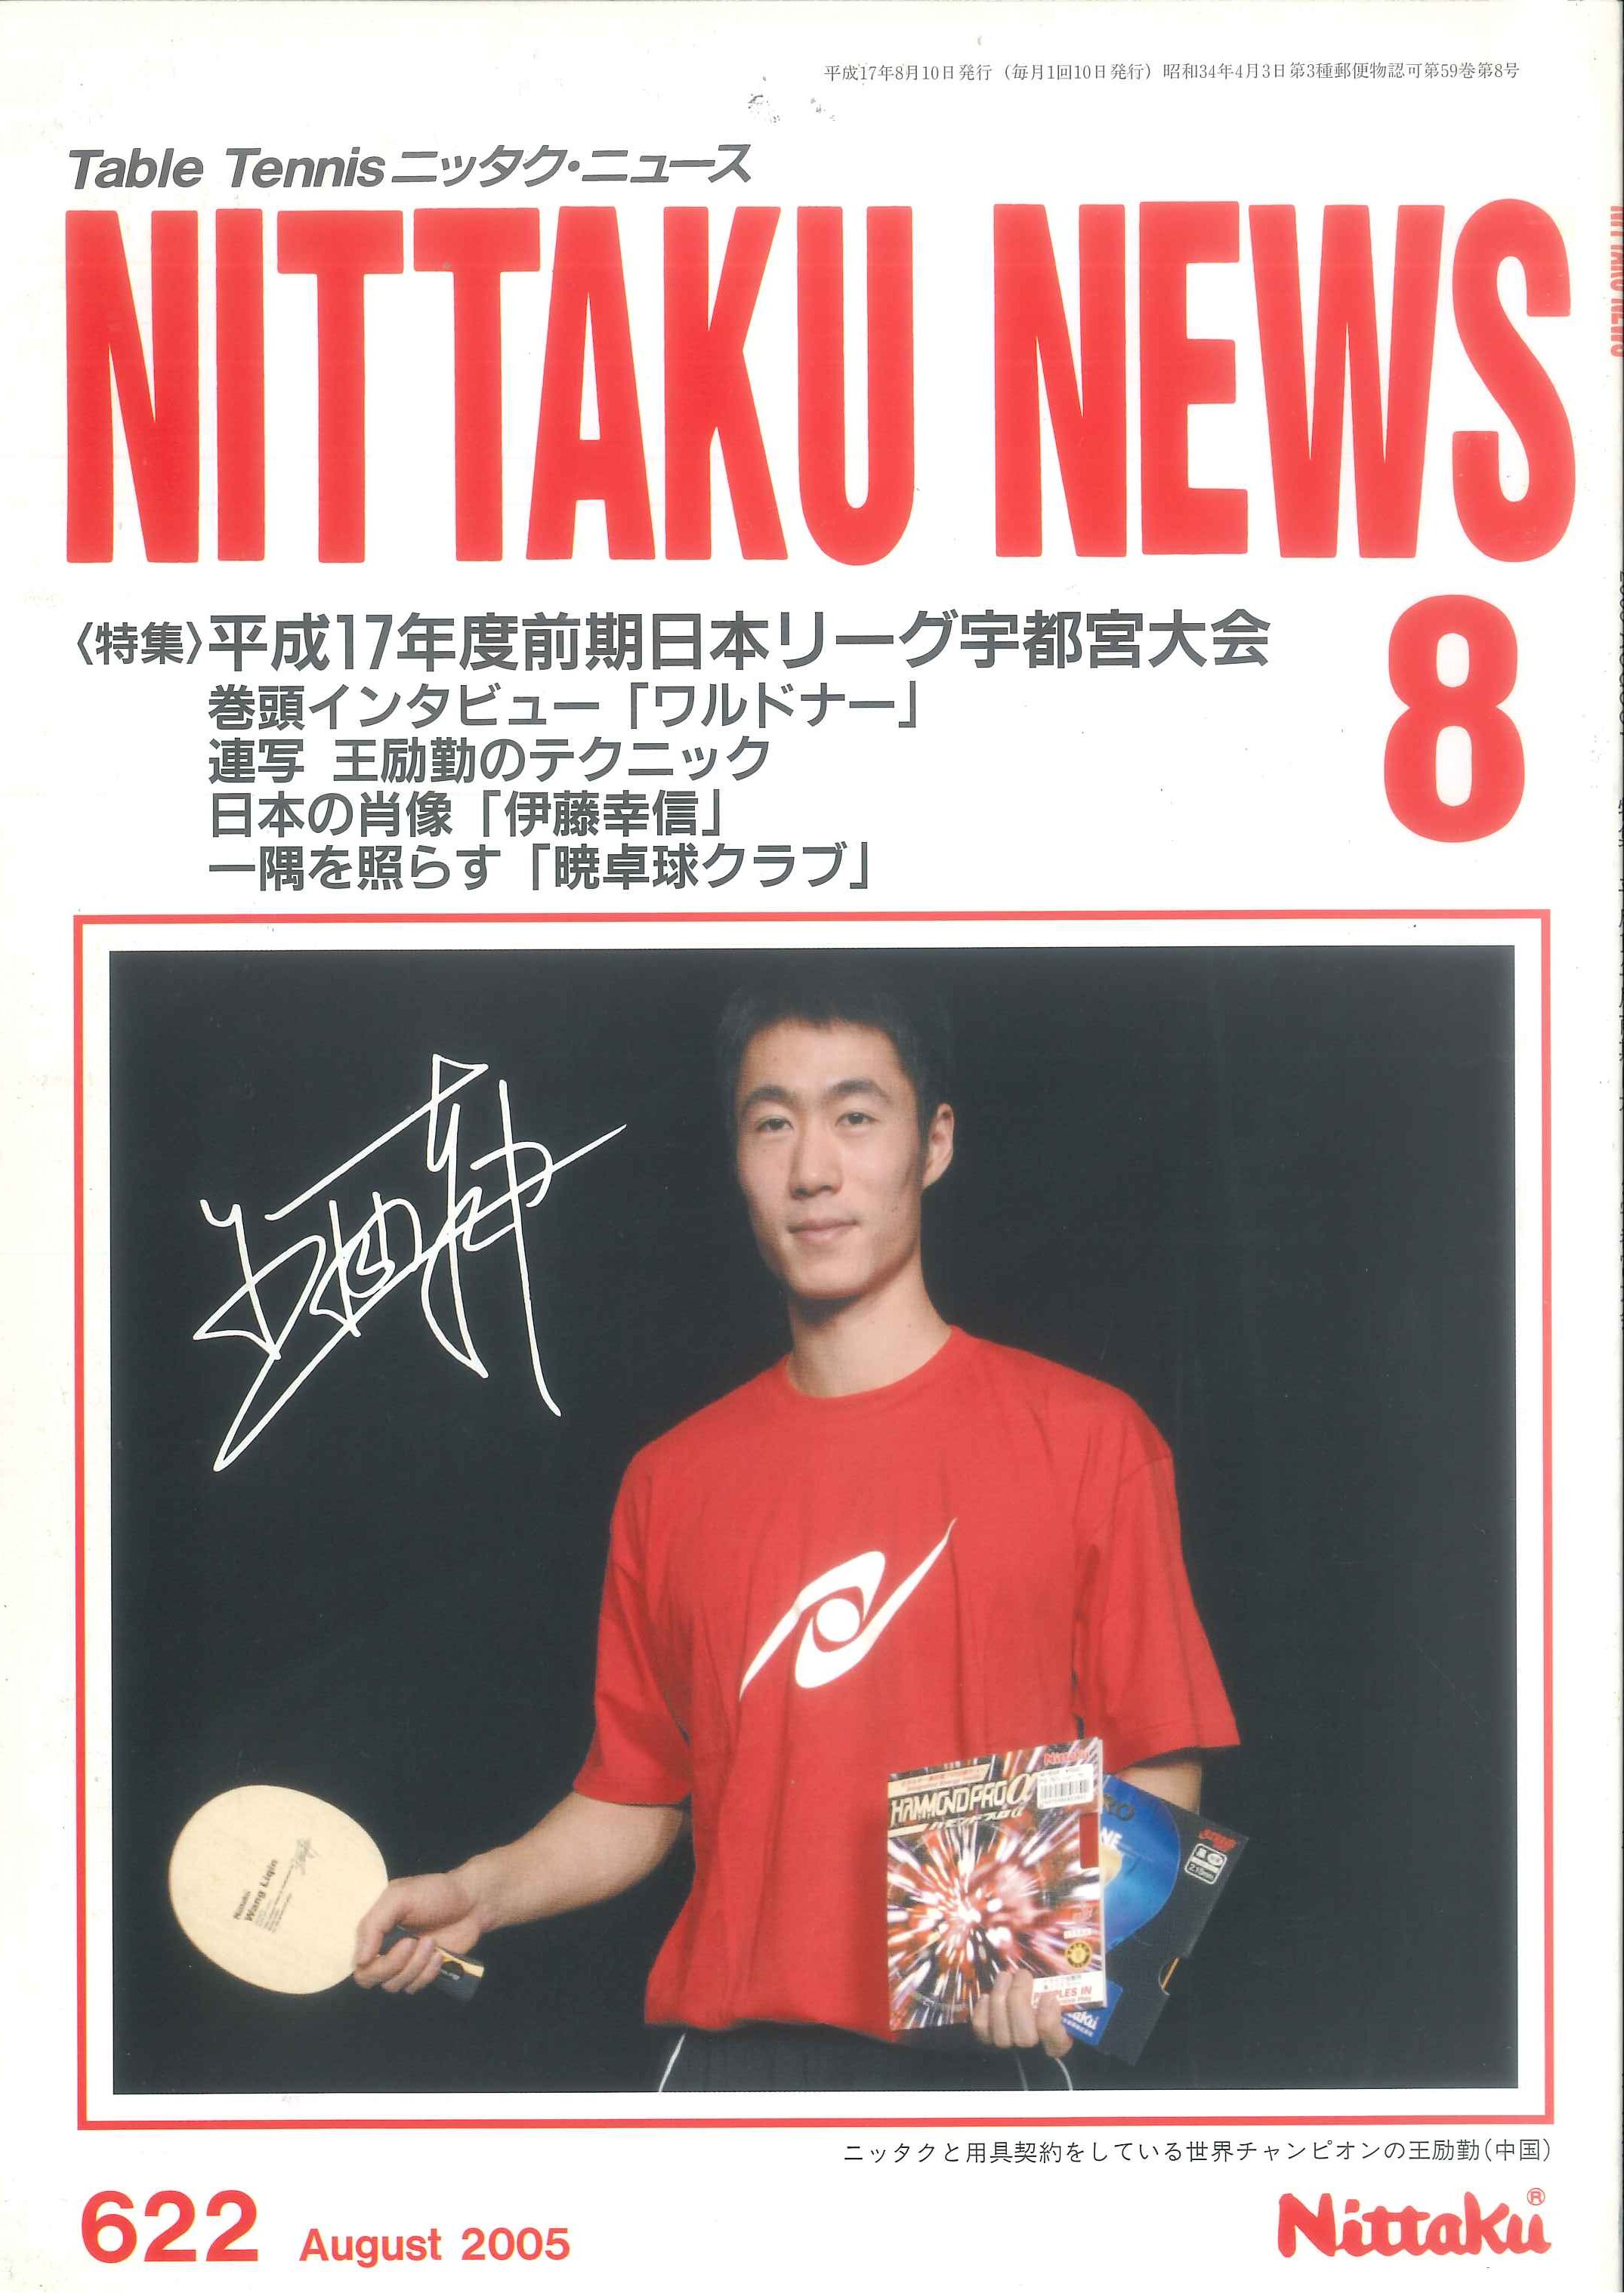 ニッタク(Nittaku) 国際卓球連盟新品ショップ I N サポート&魅惑の未来